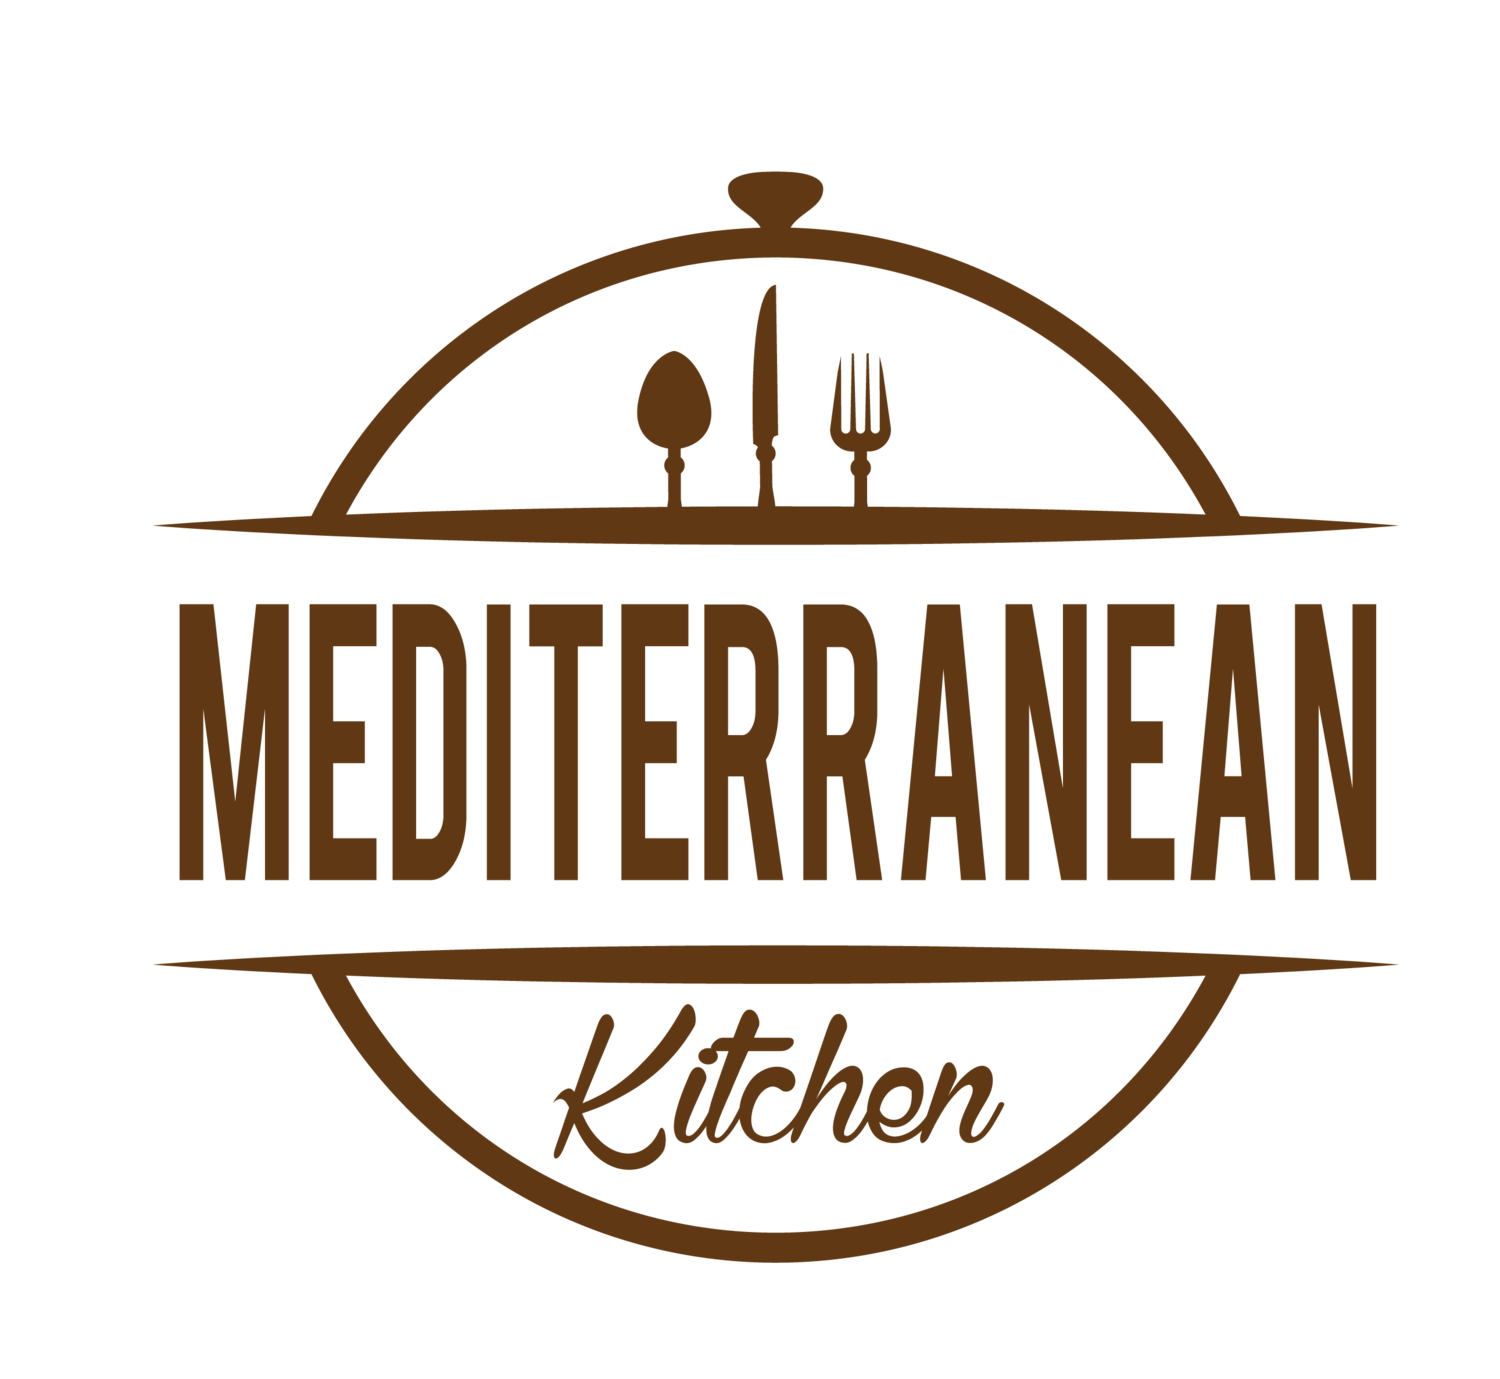 The Mediterranean Kitchen 